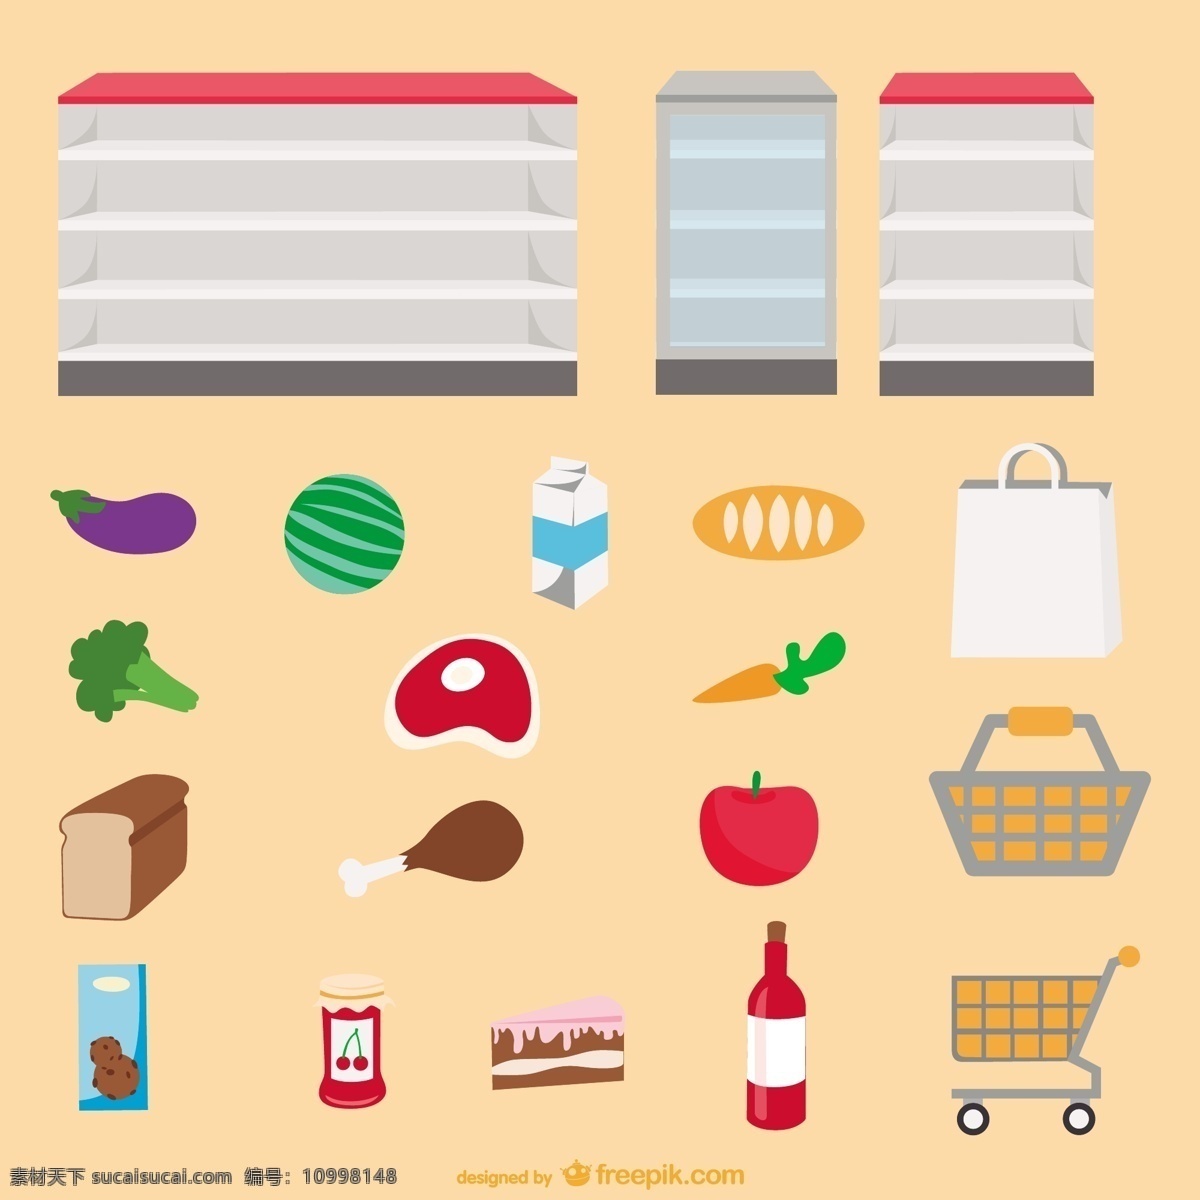 超市货架 食物 矢量 超市 购物车 购物袋 胡萝卜 货架 面包 牛奶 苹果 矢量图 蔬菜 水果 日常生活